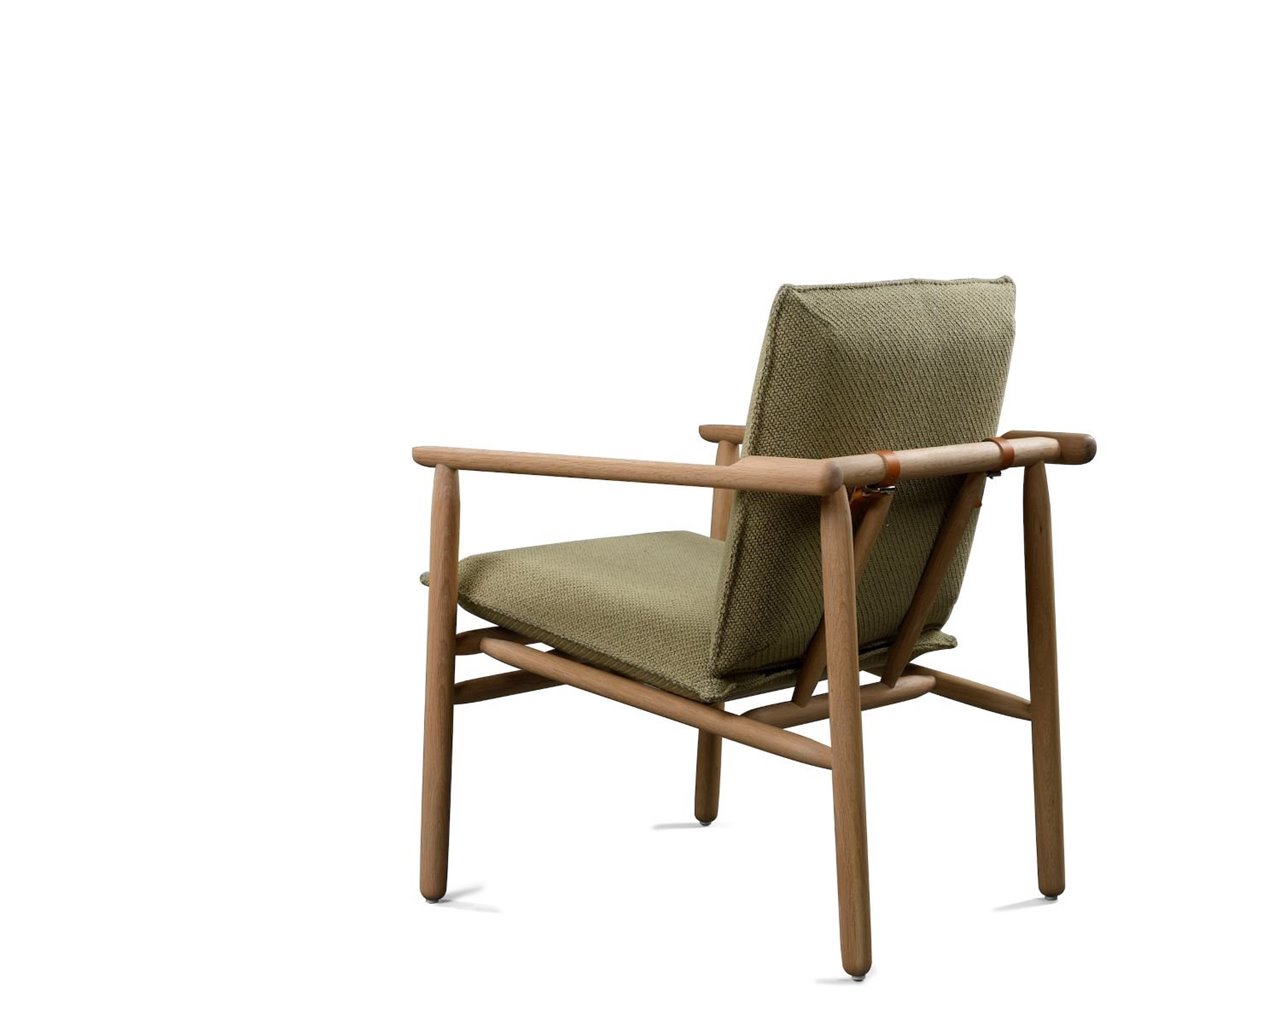 La estructura de madera es fija pero el asiento permite variaciones: cuero vegetal y una amplia selección de telas. 